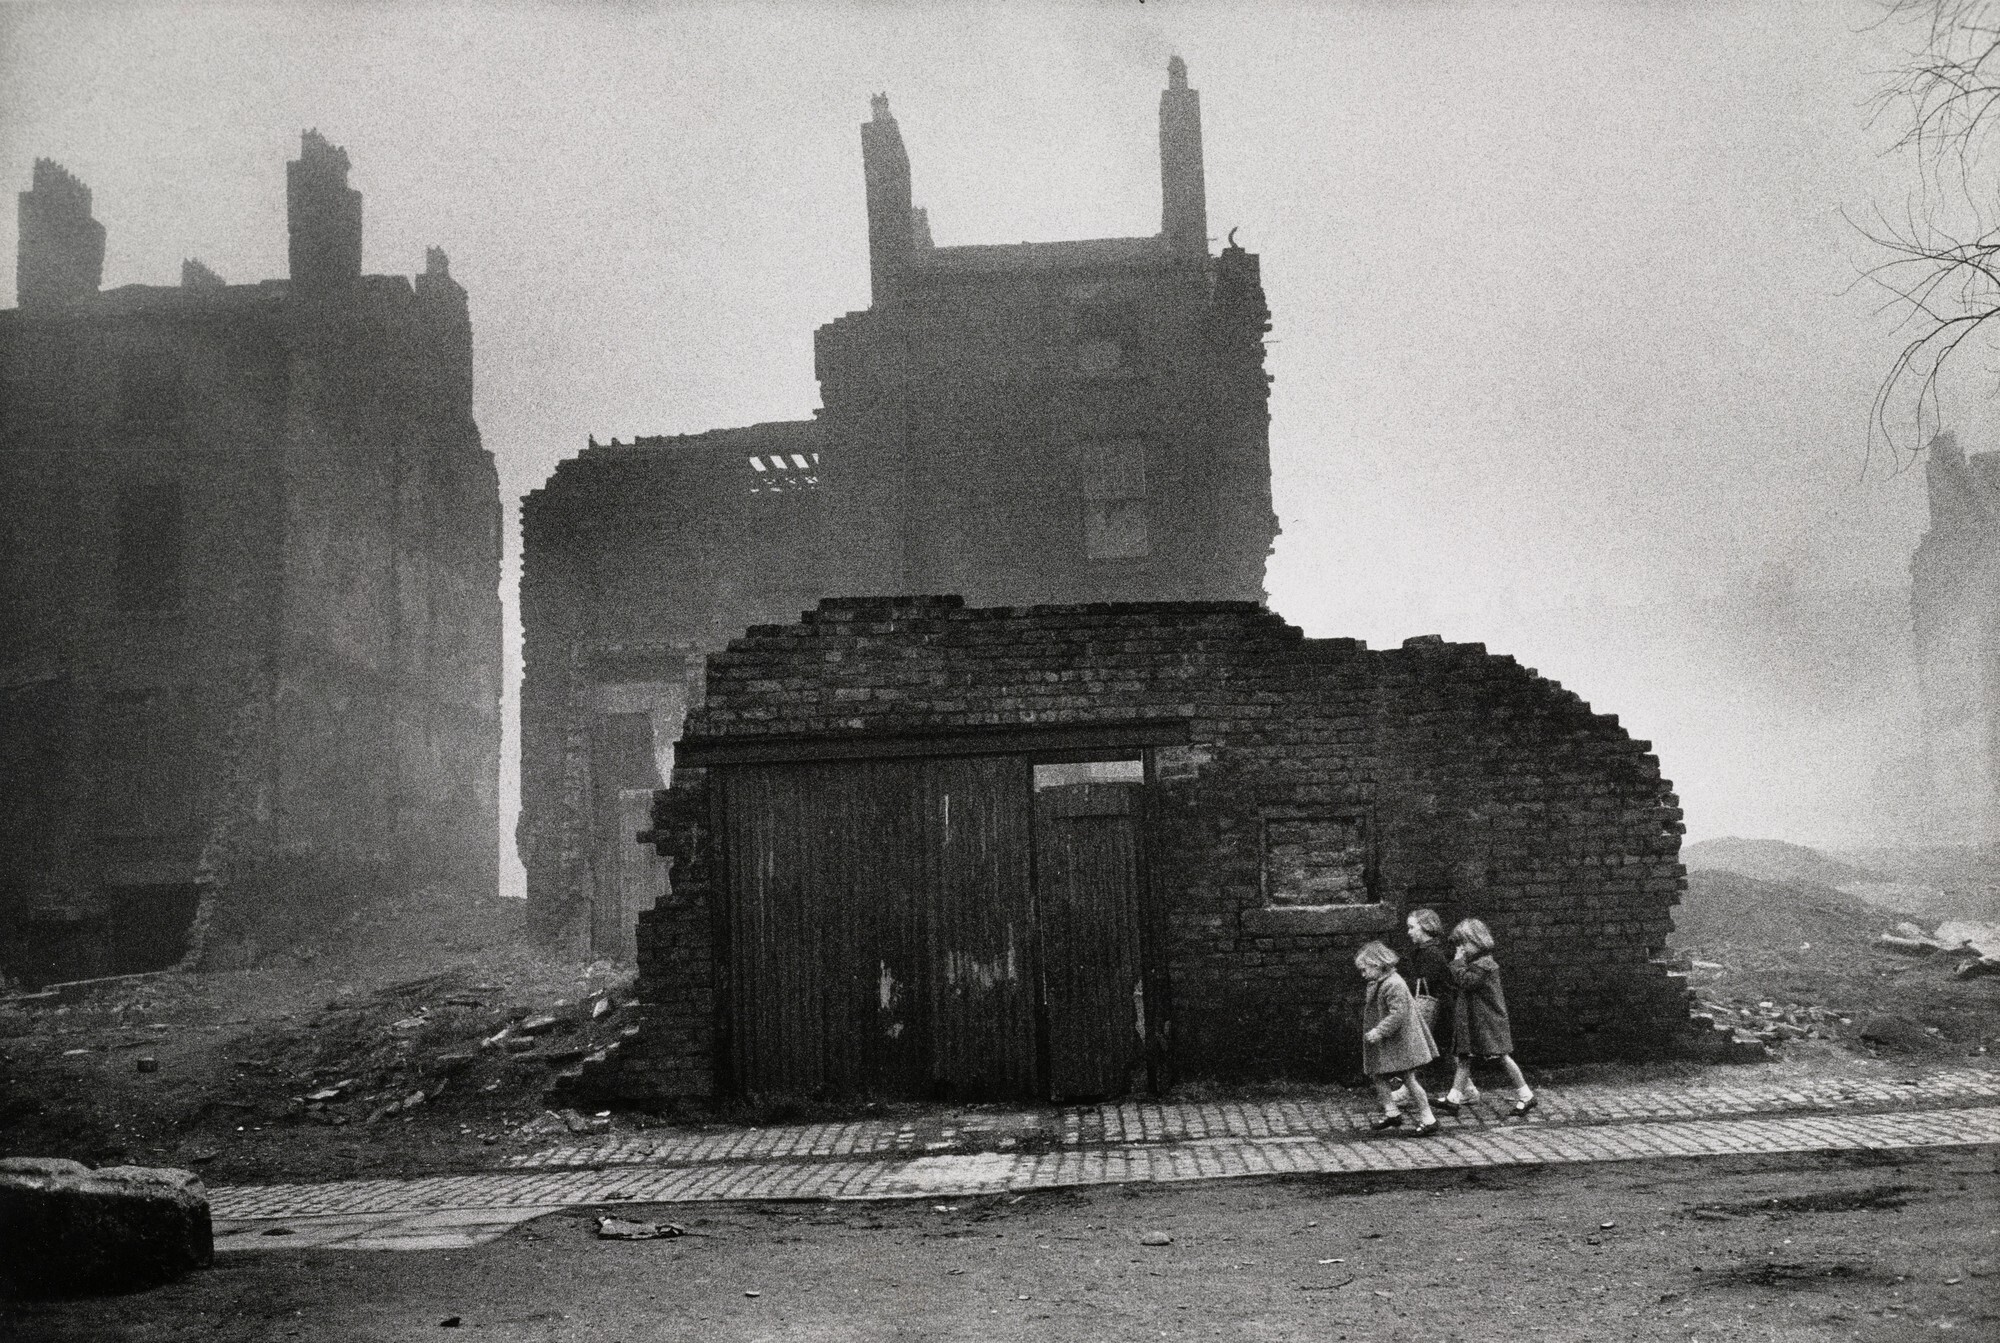 Район под снос, Ливерпуль, 1963. Фотограф Анри Картье-Брессон